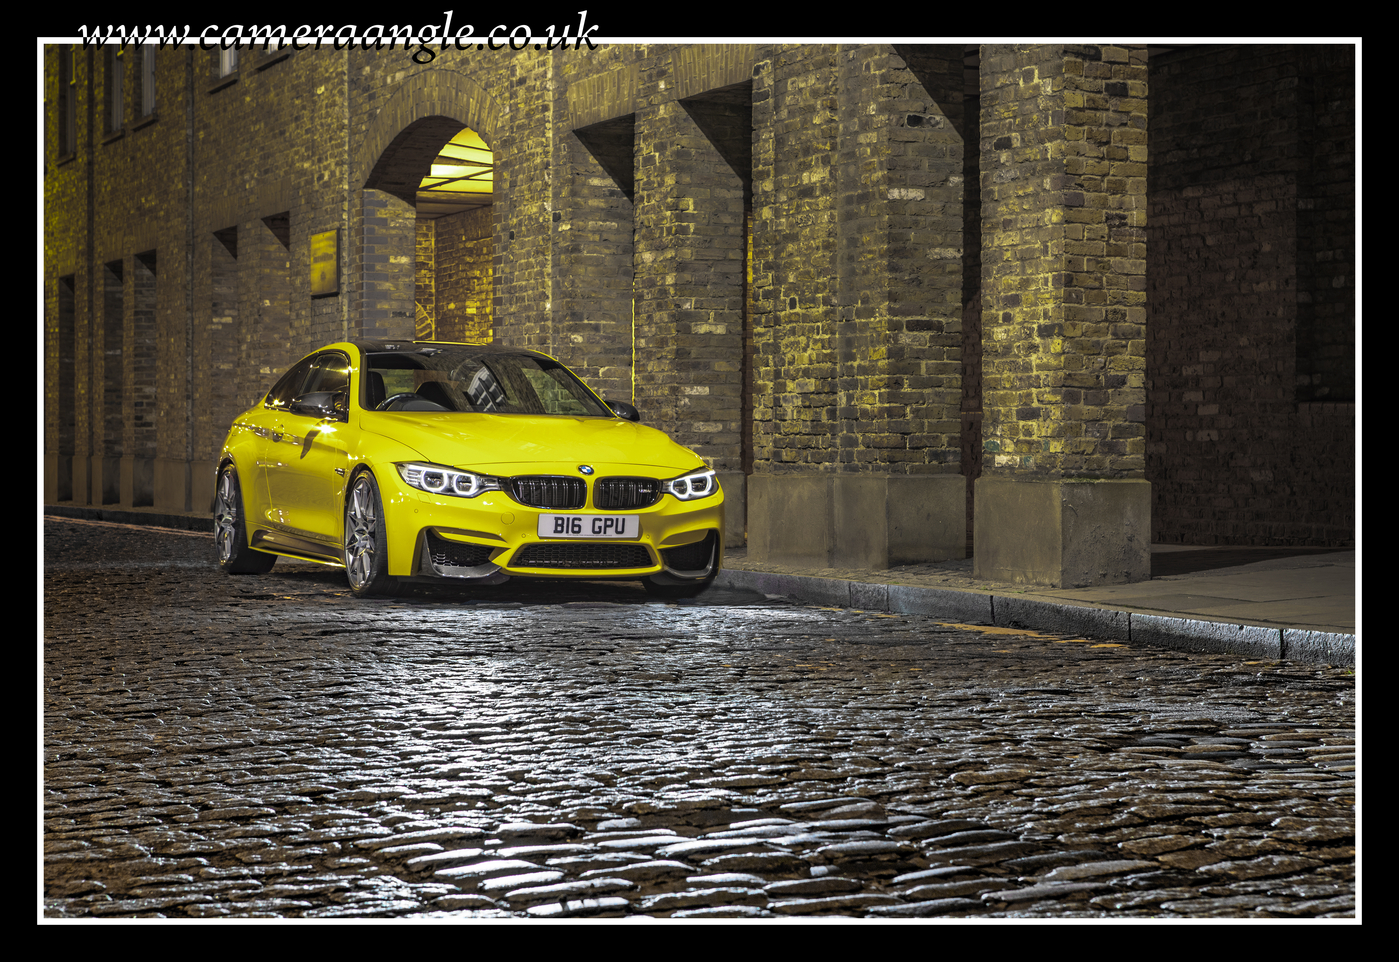 BMW M4
Keywords: BMW M4